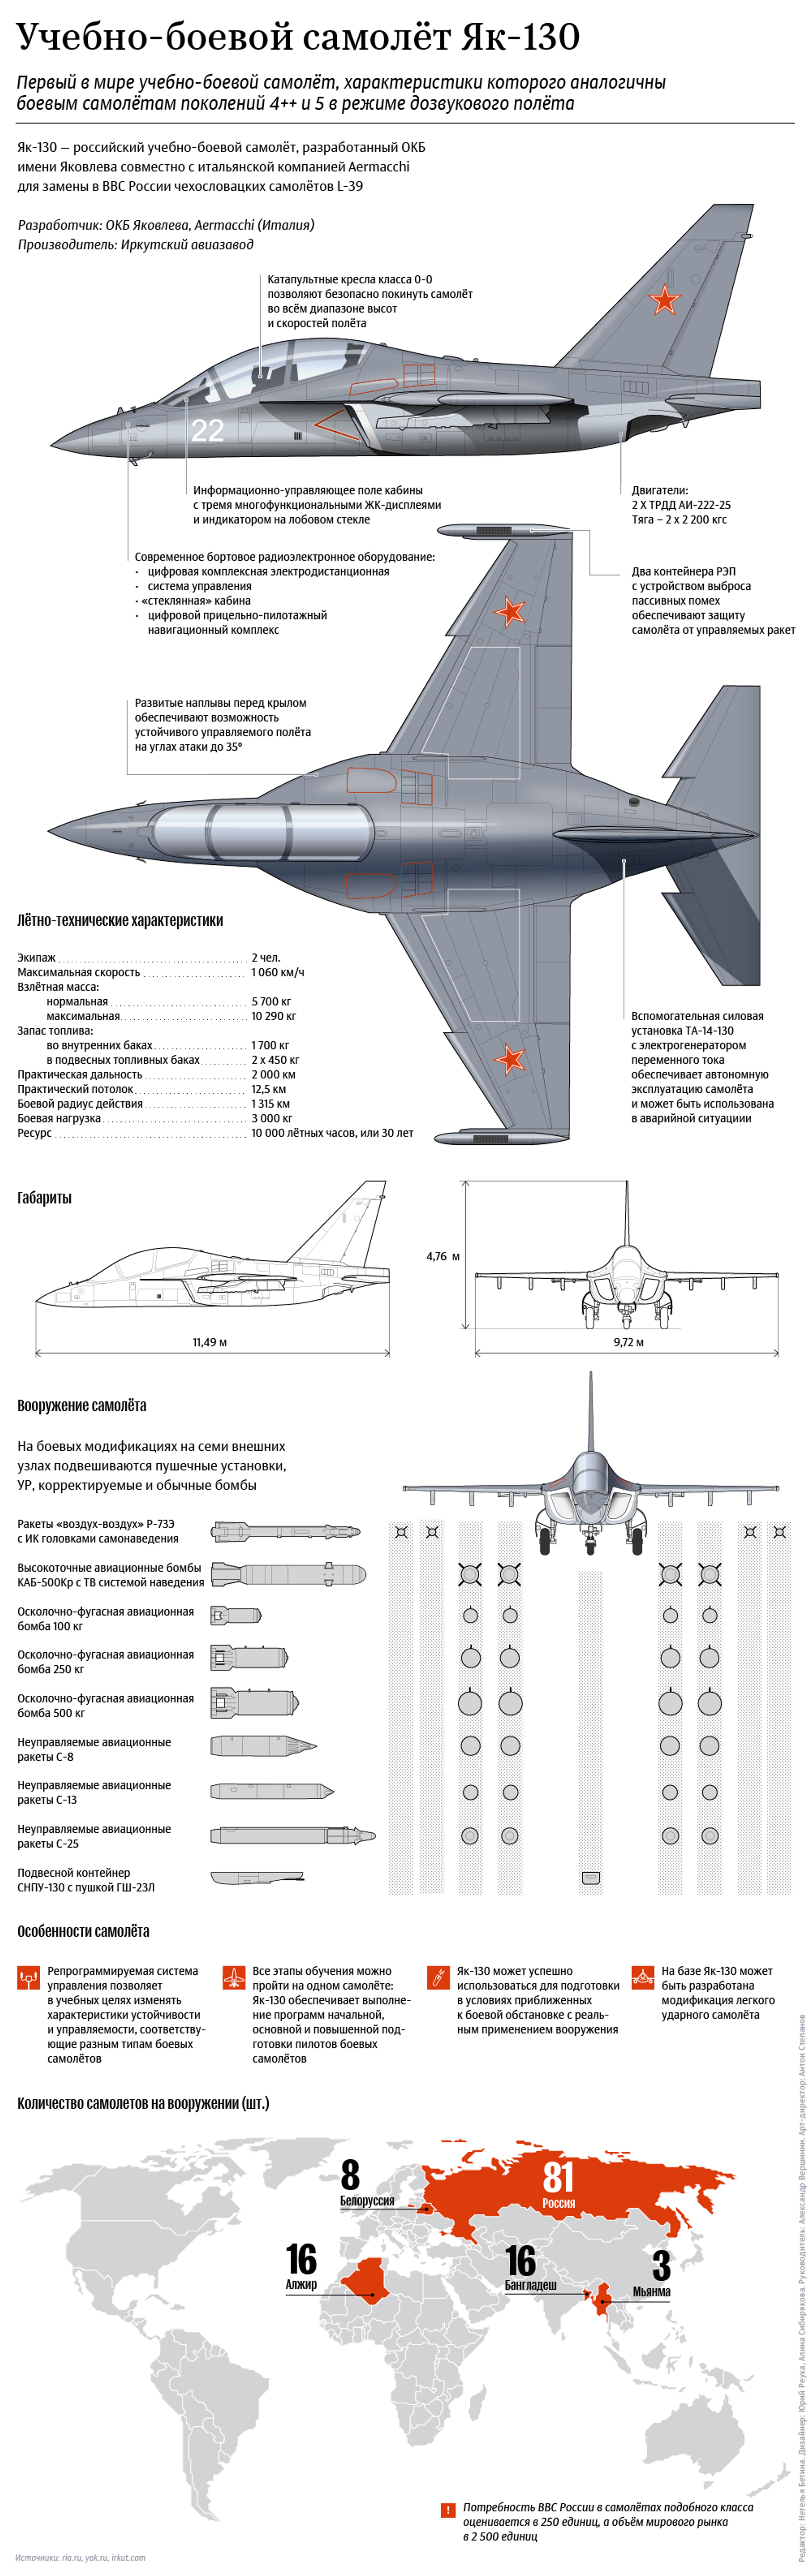 Лучший учебно-боевой самолет Як-130 - Sputnik Беларусь, 1920, 19.05.2021